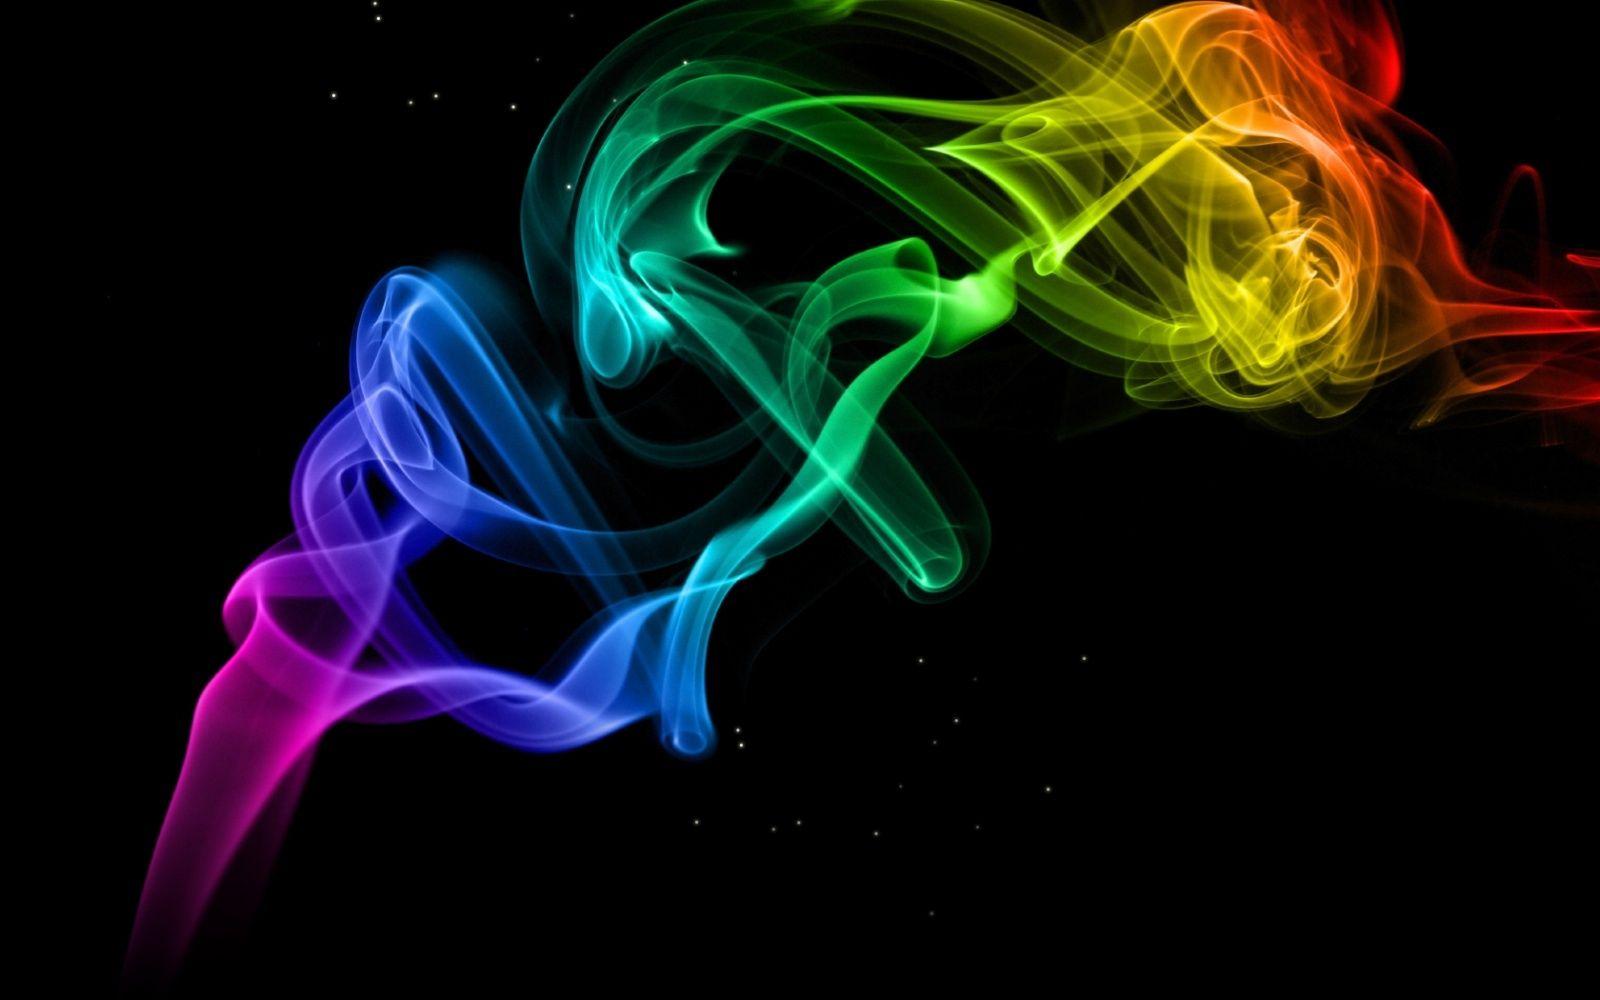 Colorful Smoke Wallpaper 27451 1600x1000 px